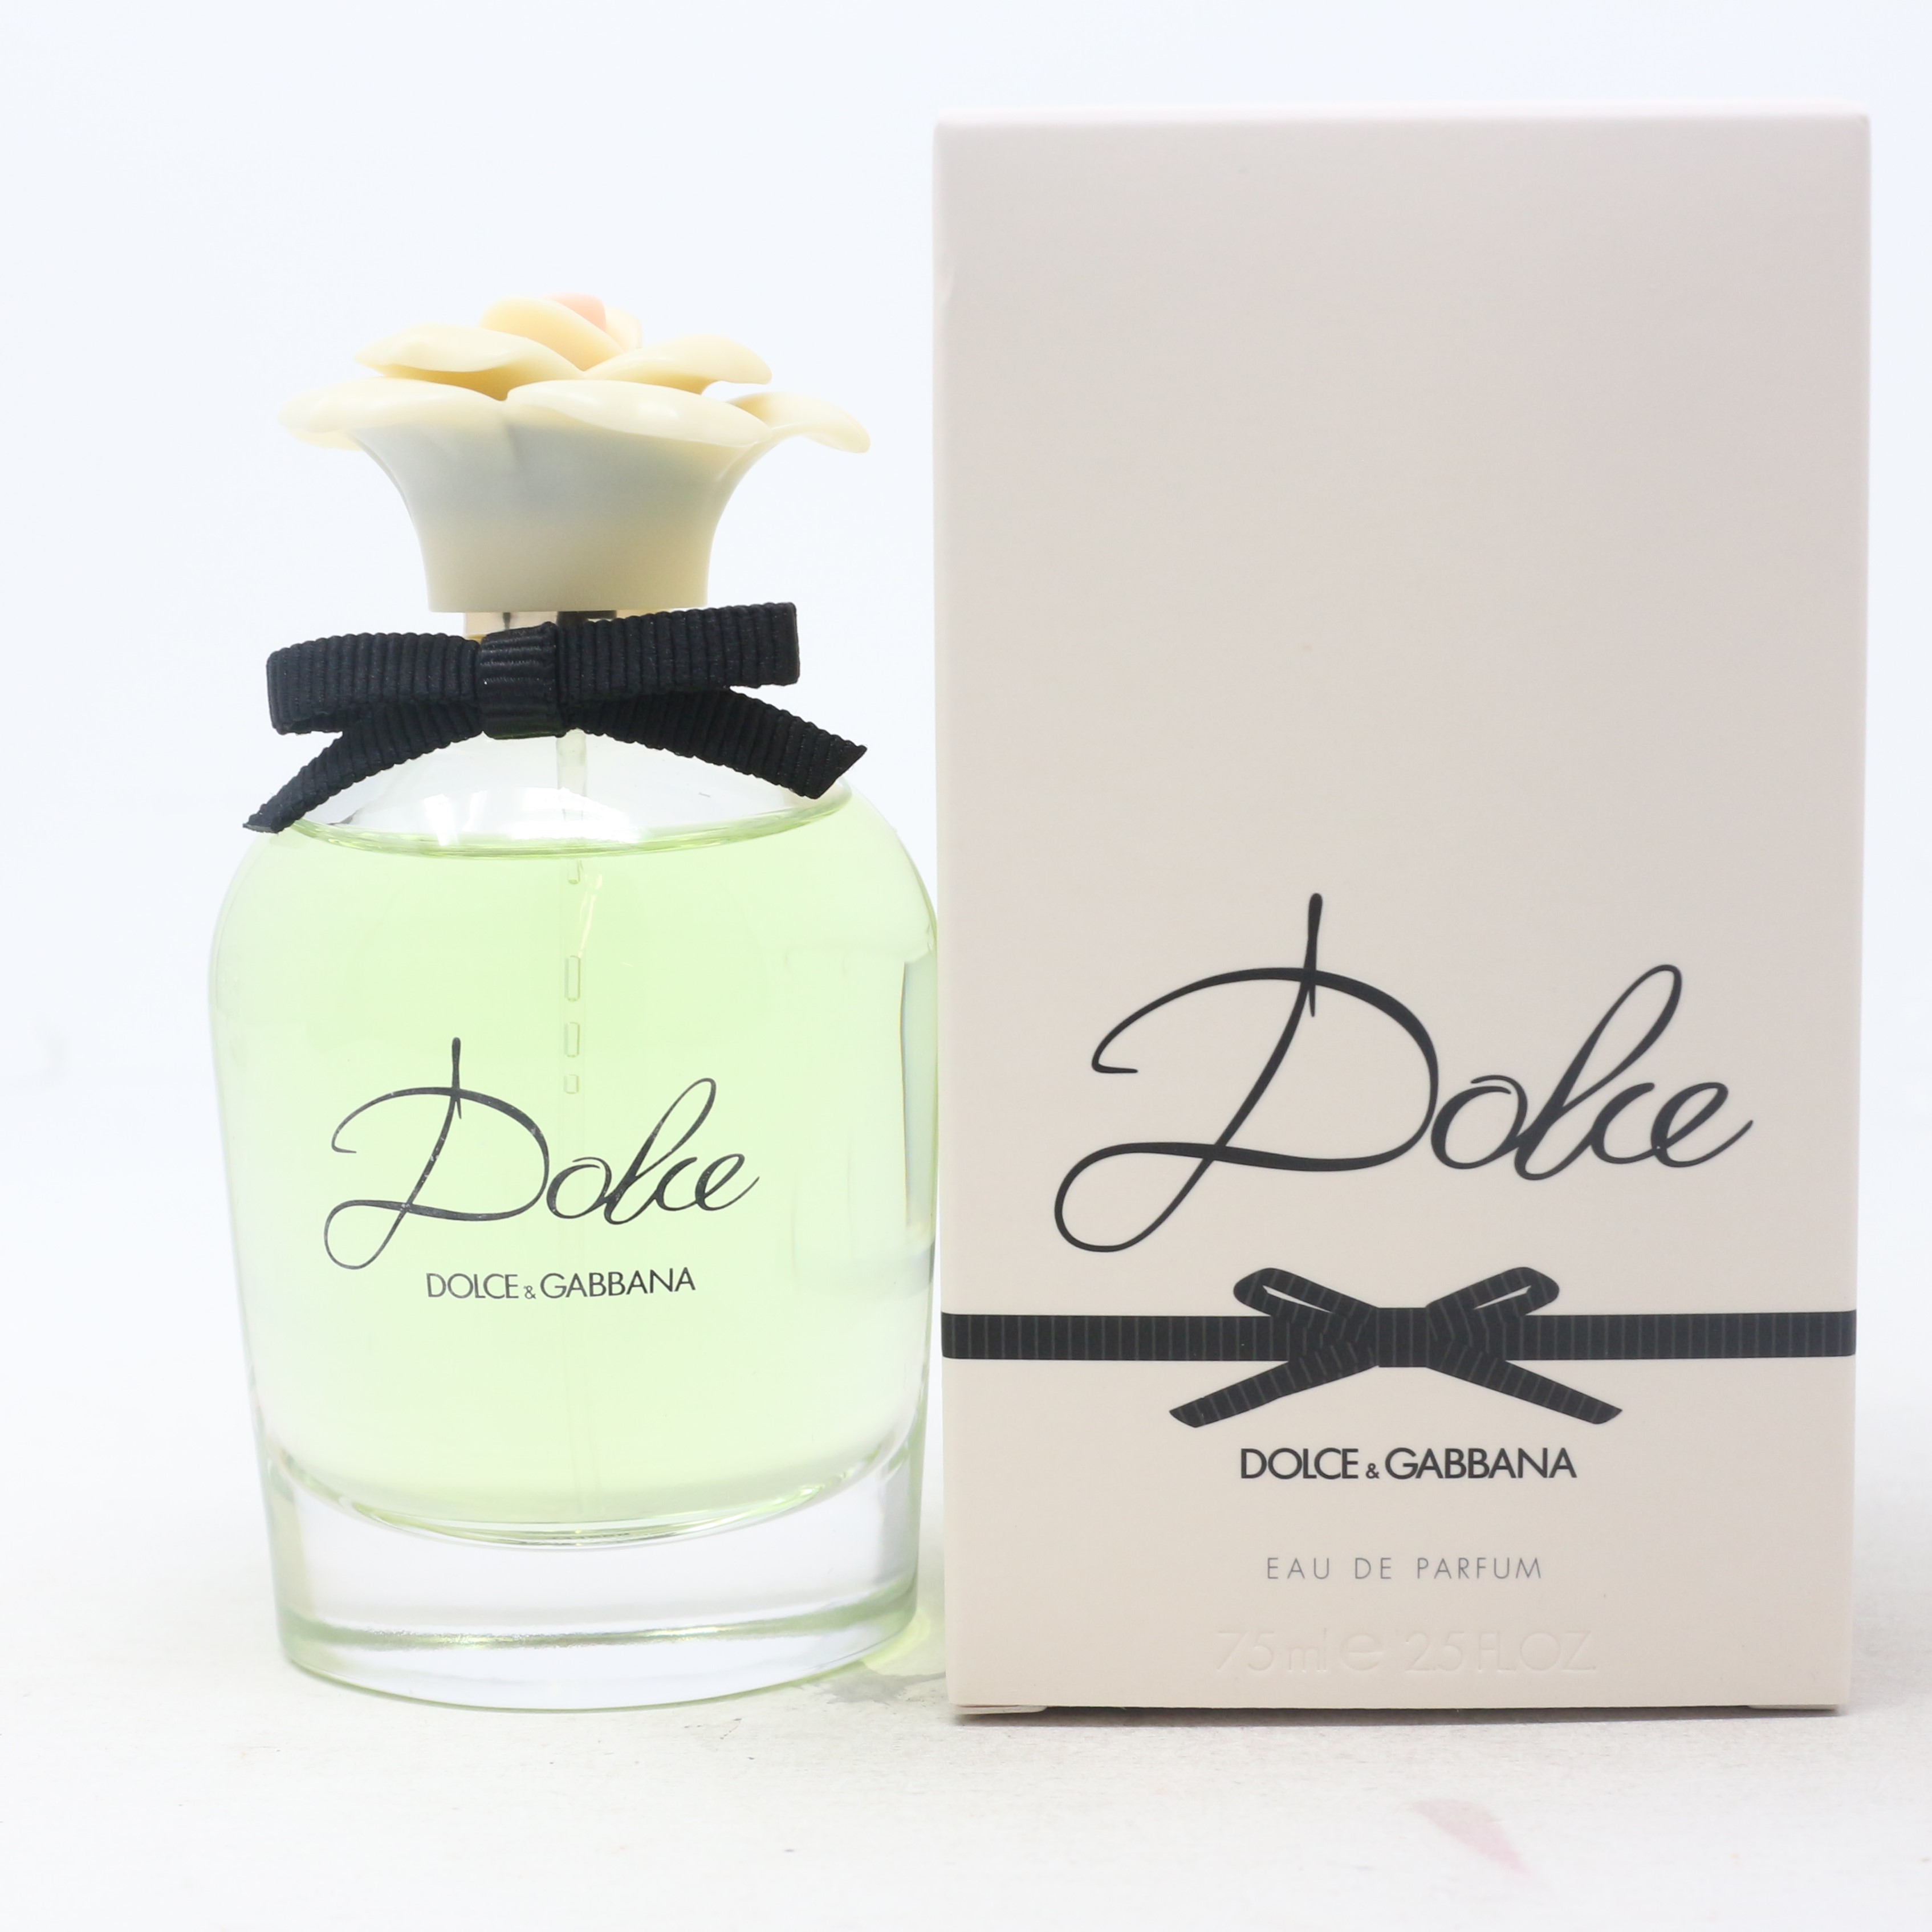 Dolce by Dolce & Gabbana Eau De Parfum 2.5oz/75ml Spray New With Box ...